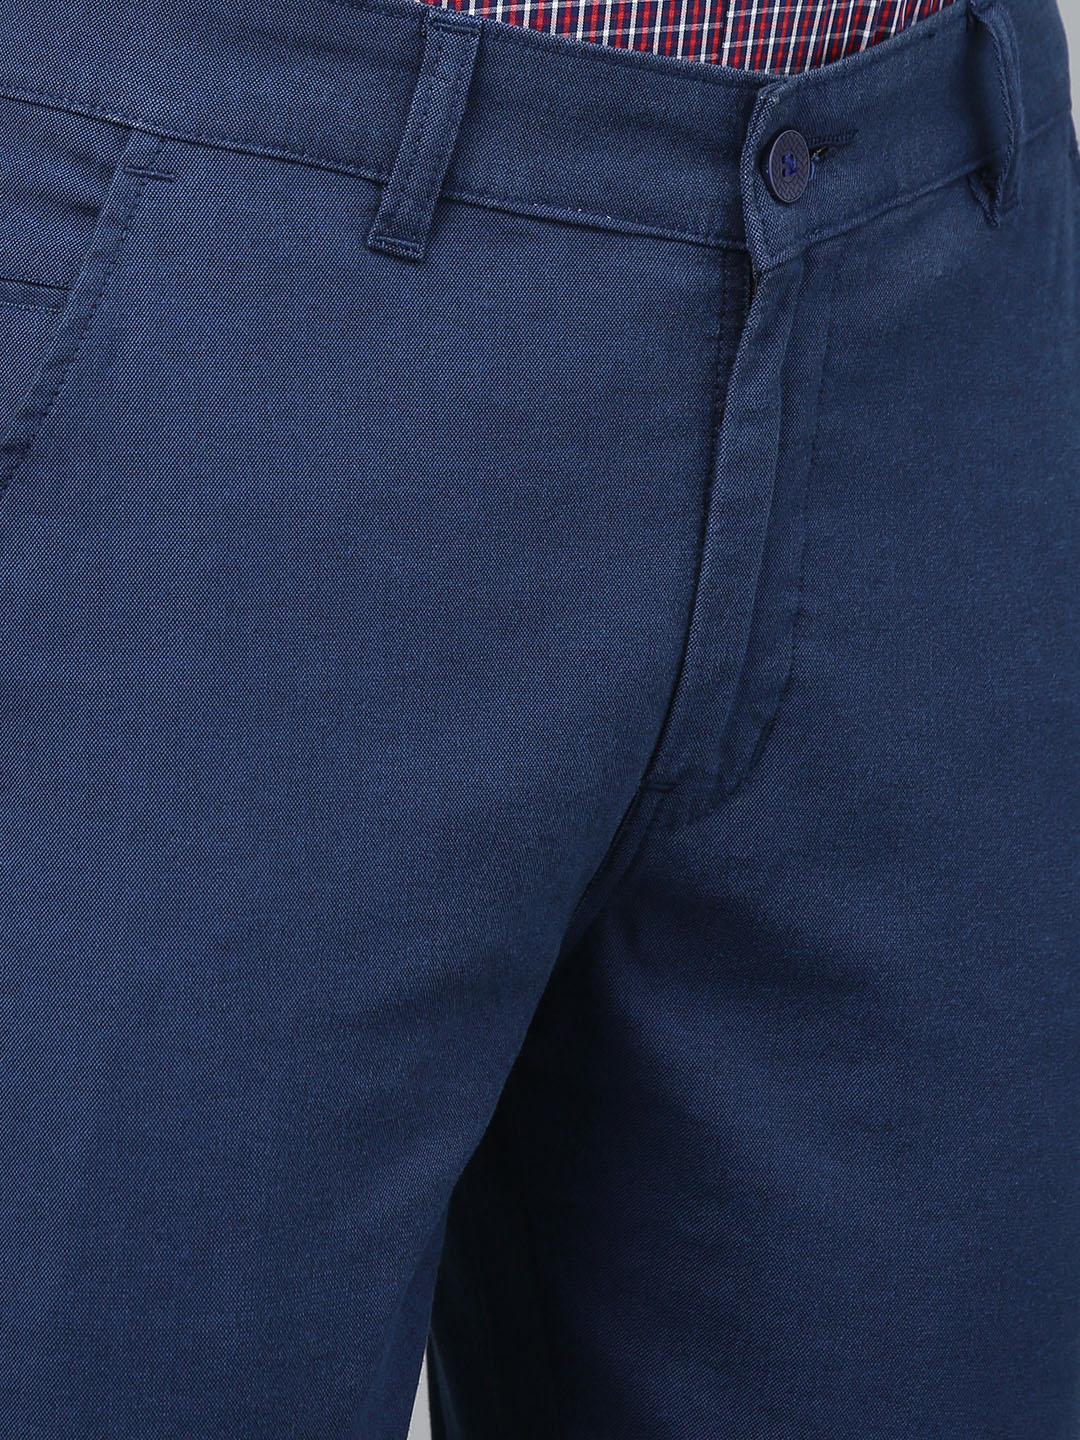 Men Blue Cotton Solid Slim Fit Casual Trouser